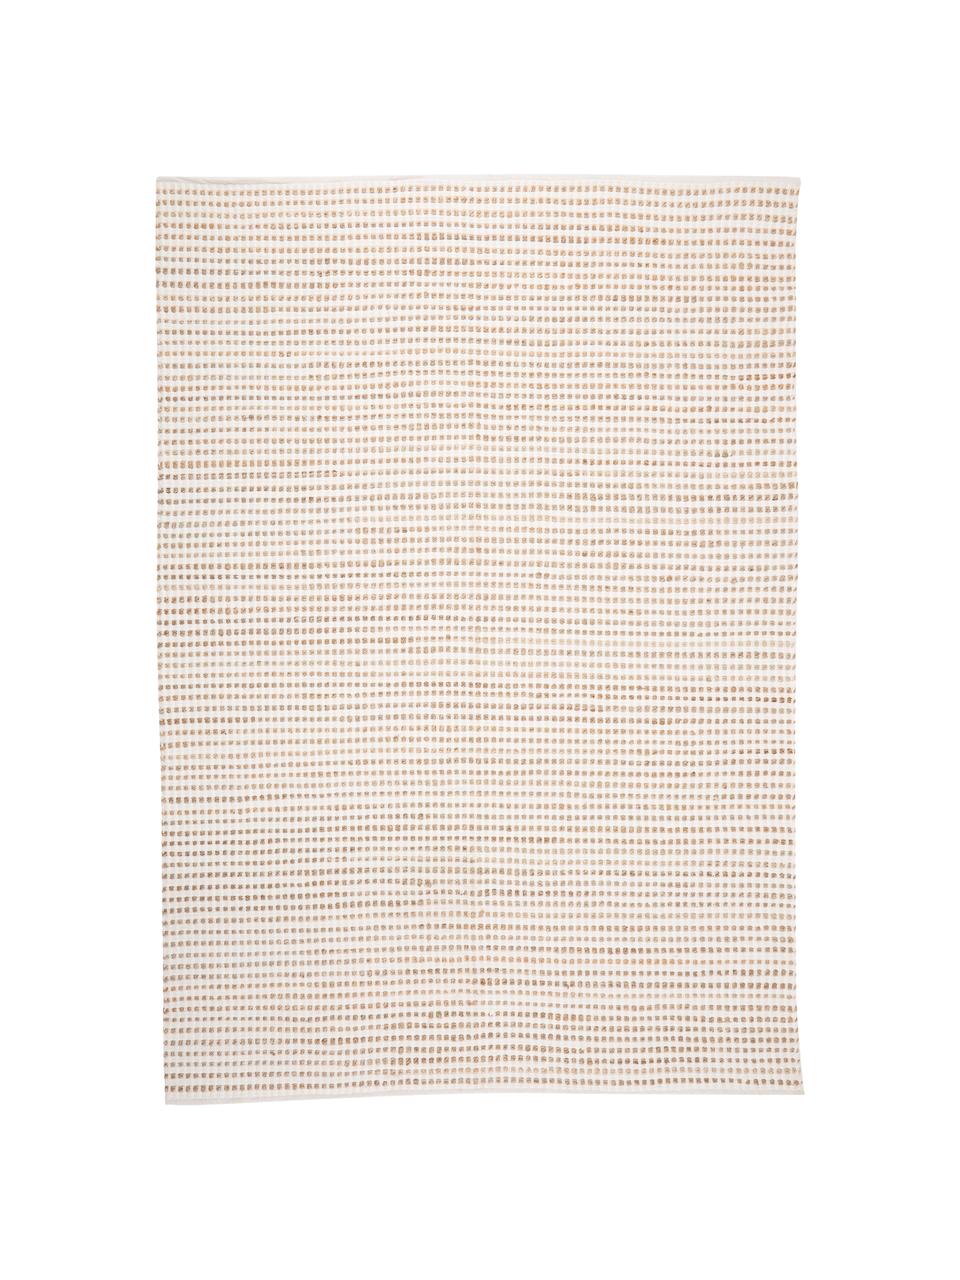 Teppich Fiesta aus Baumwolle/Jute, 55% Baumwolle, 45% Jute, Weiß, Beige, B 200 x L 300 cm (Größe L)